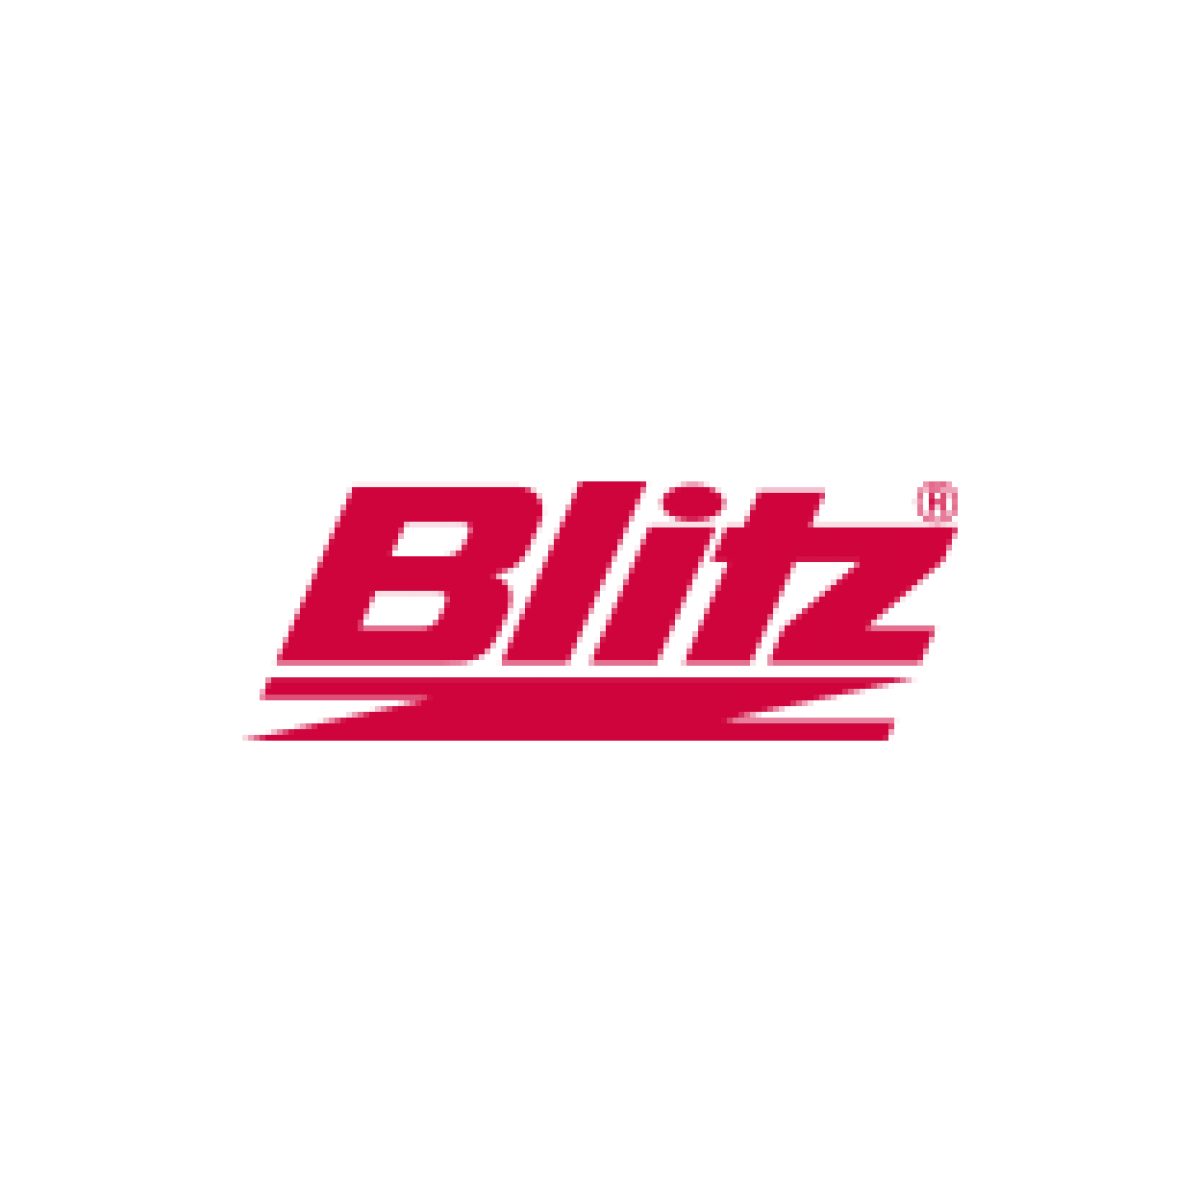 Blitz